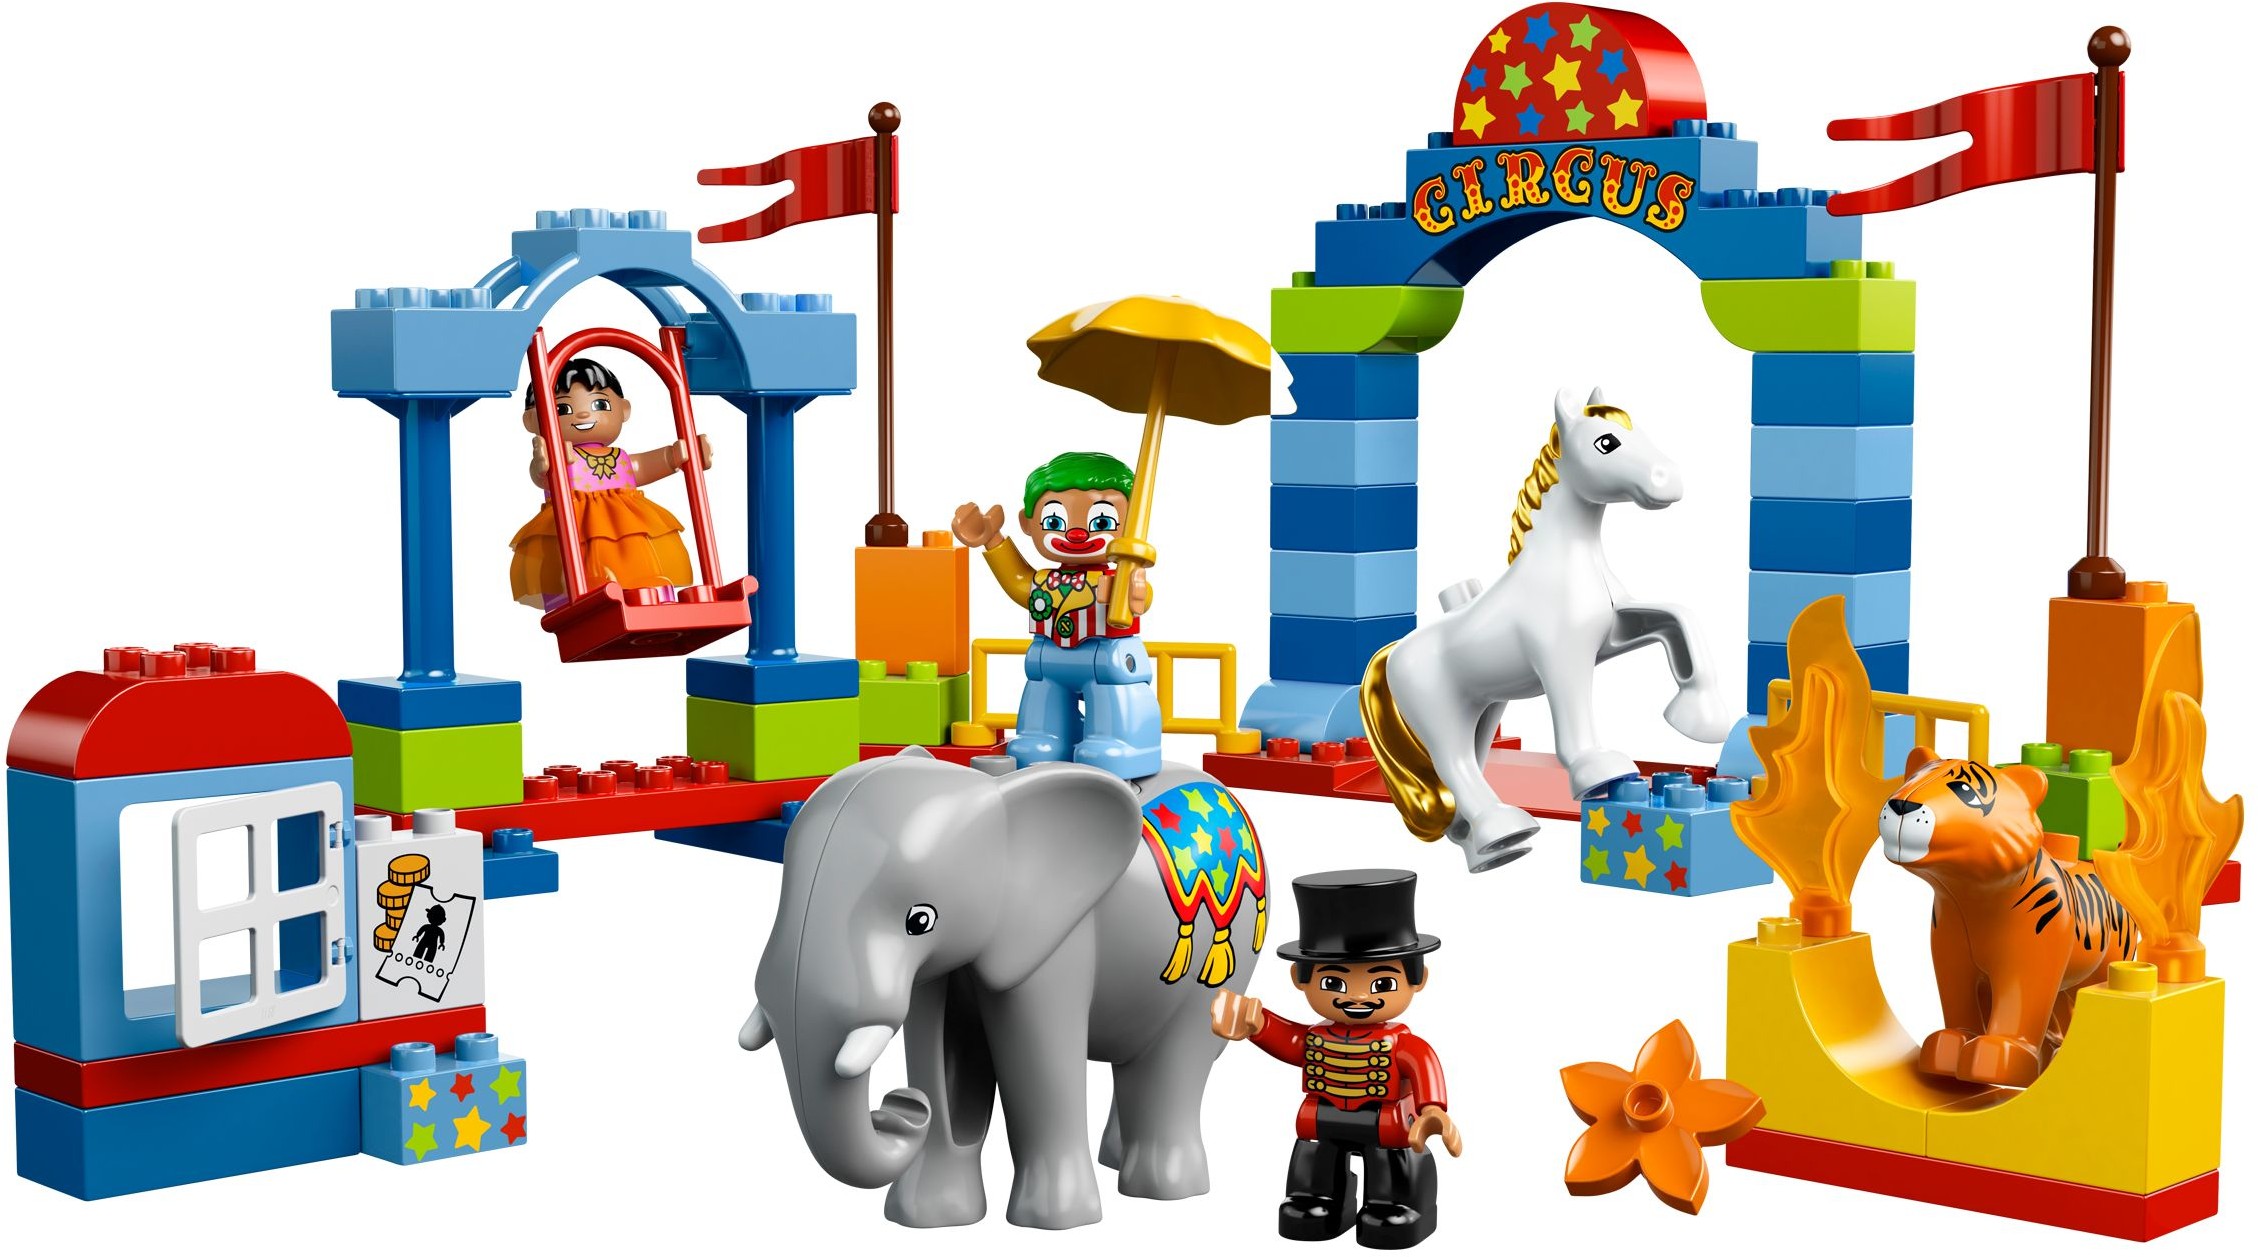 LEGO Duplo | Brickset